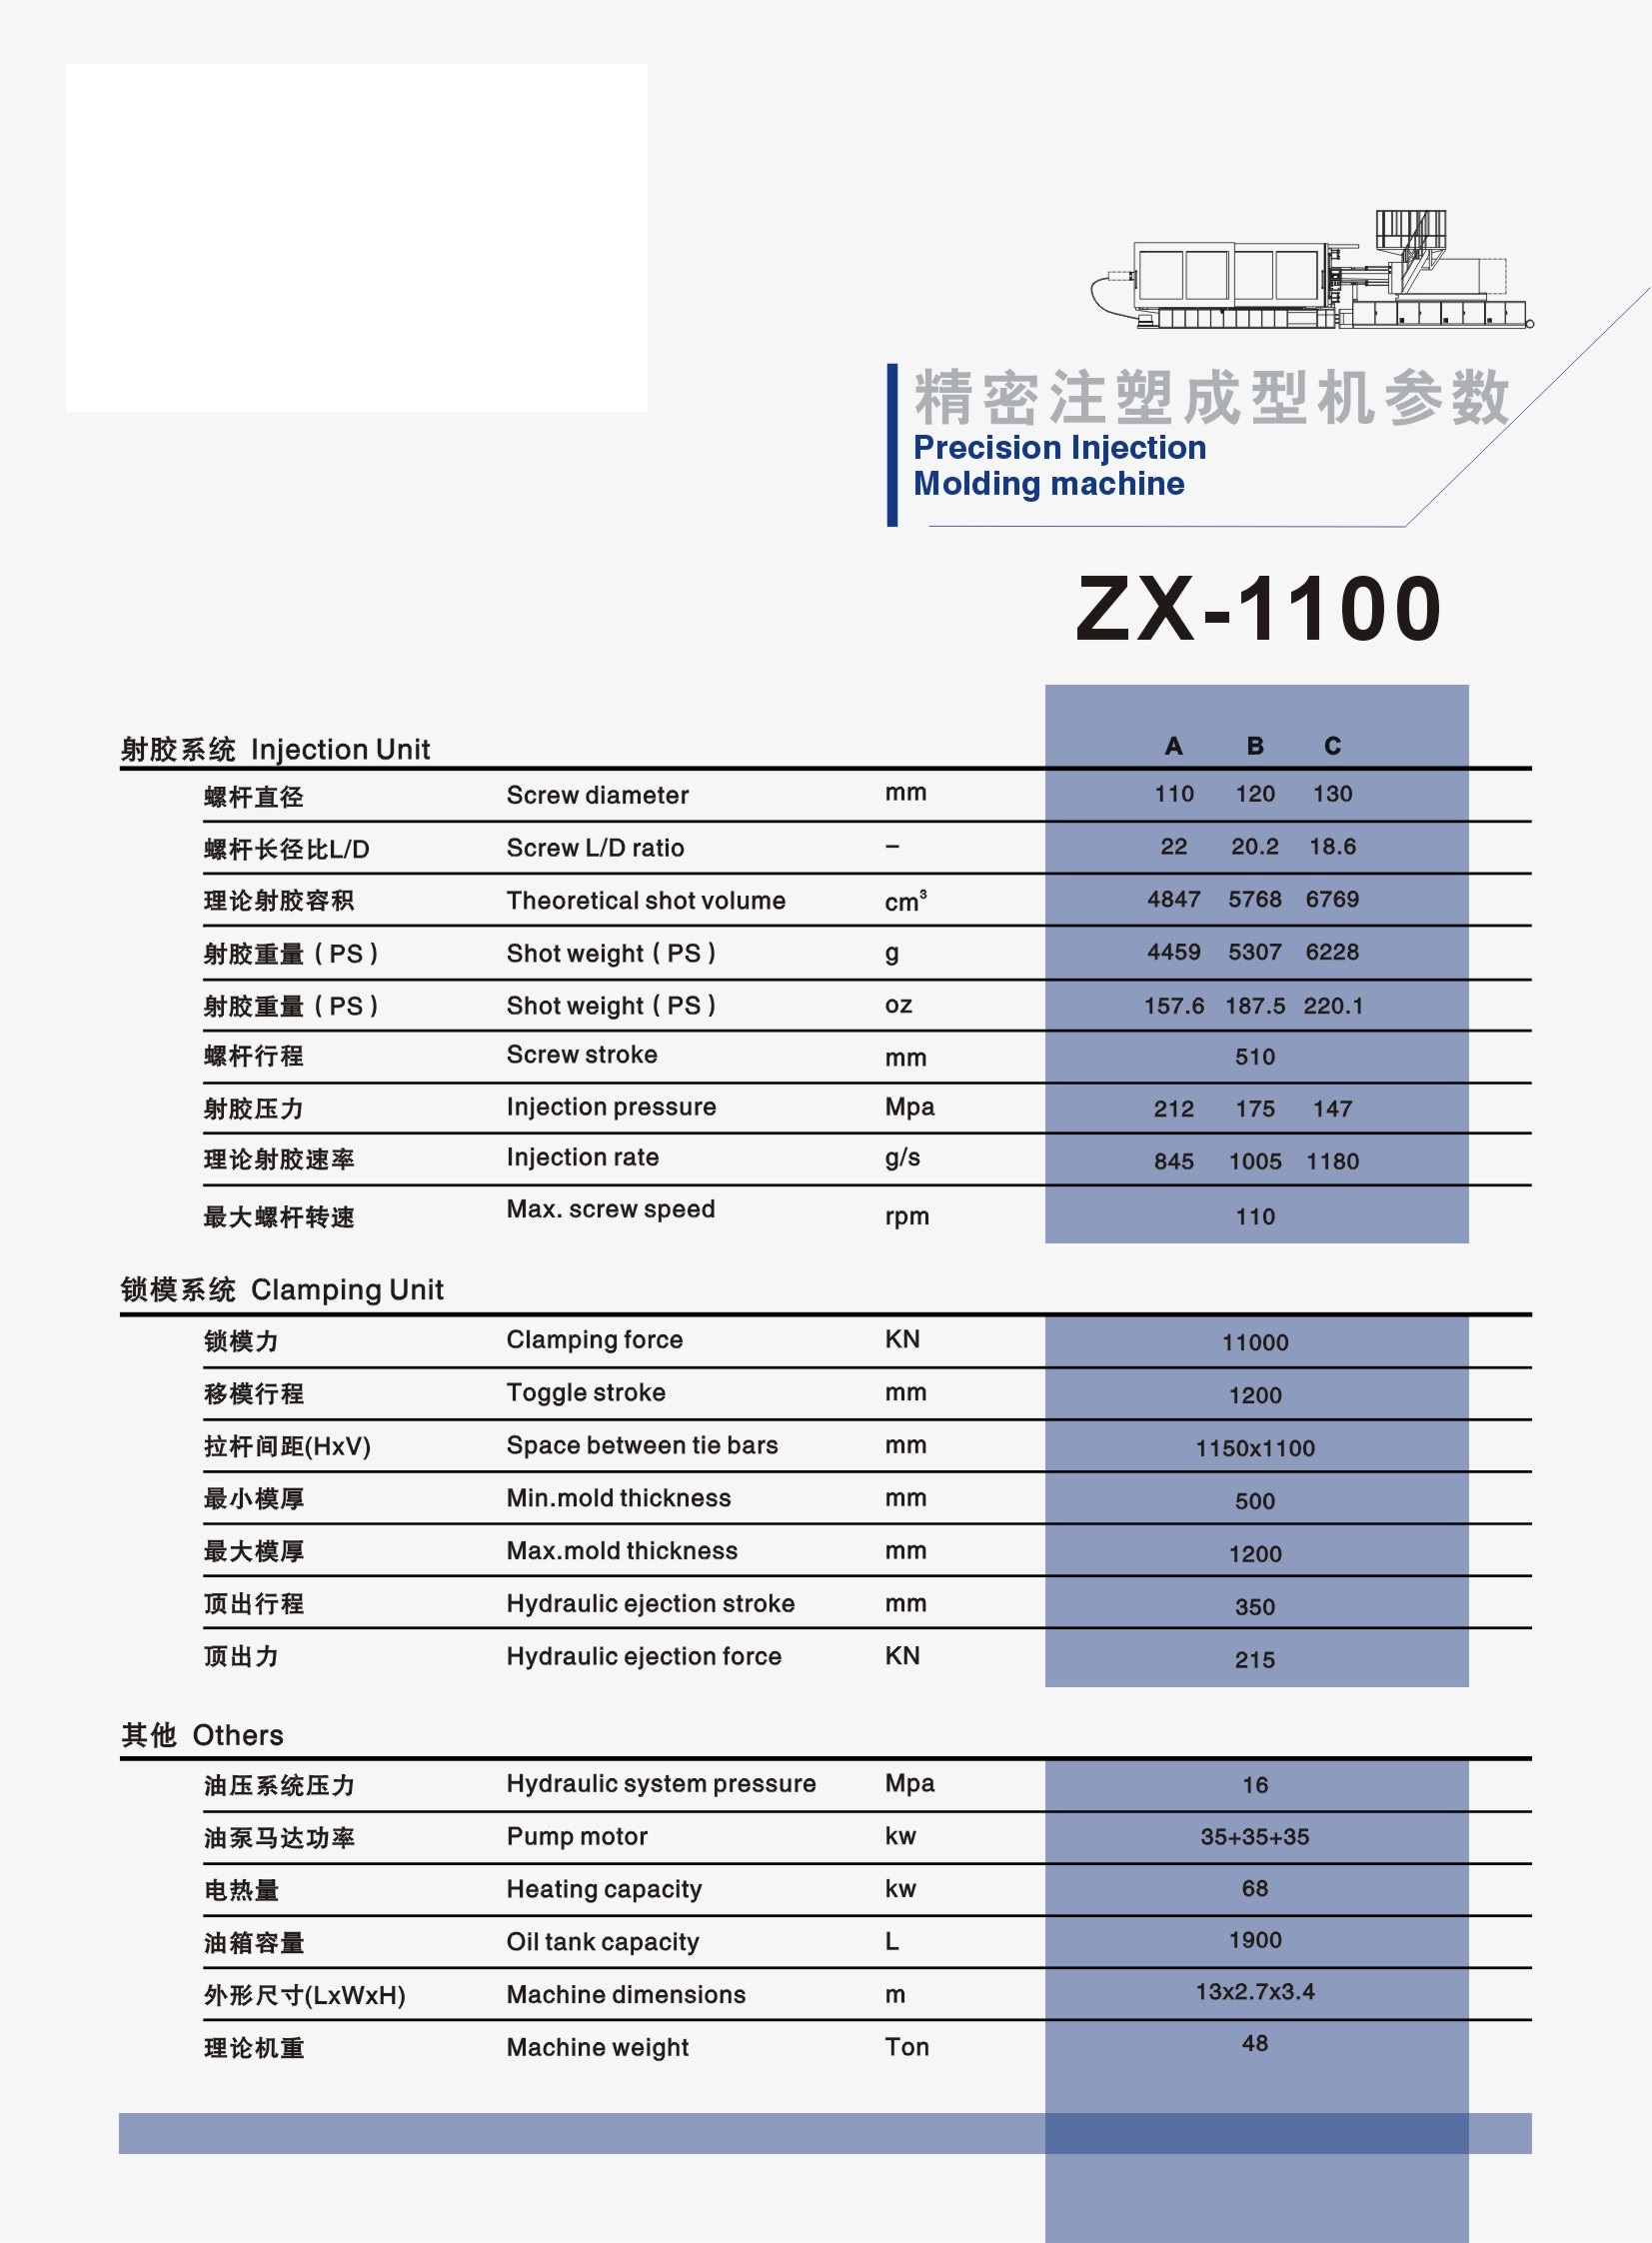 ZX-1100.jpg